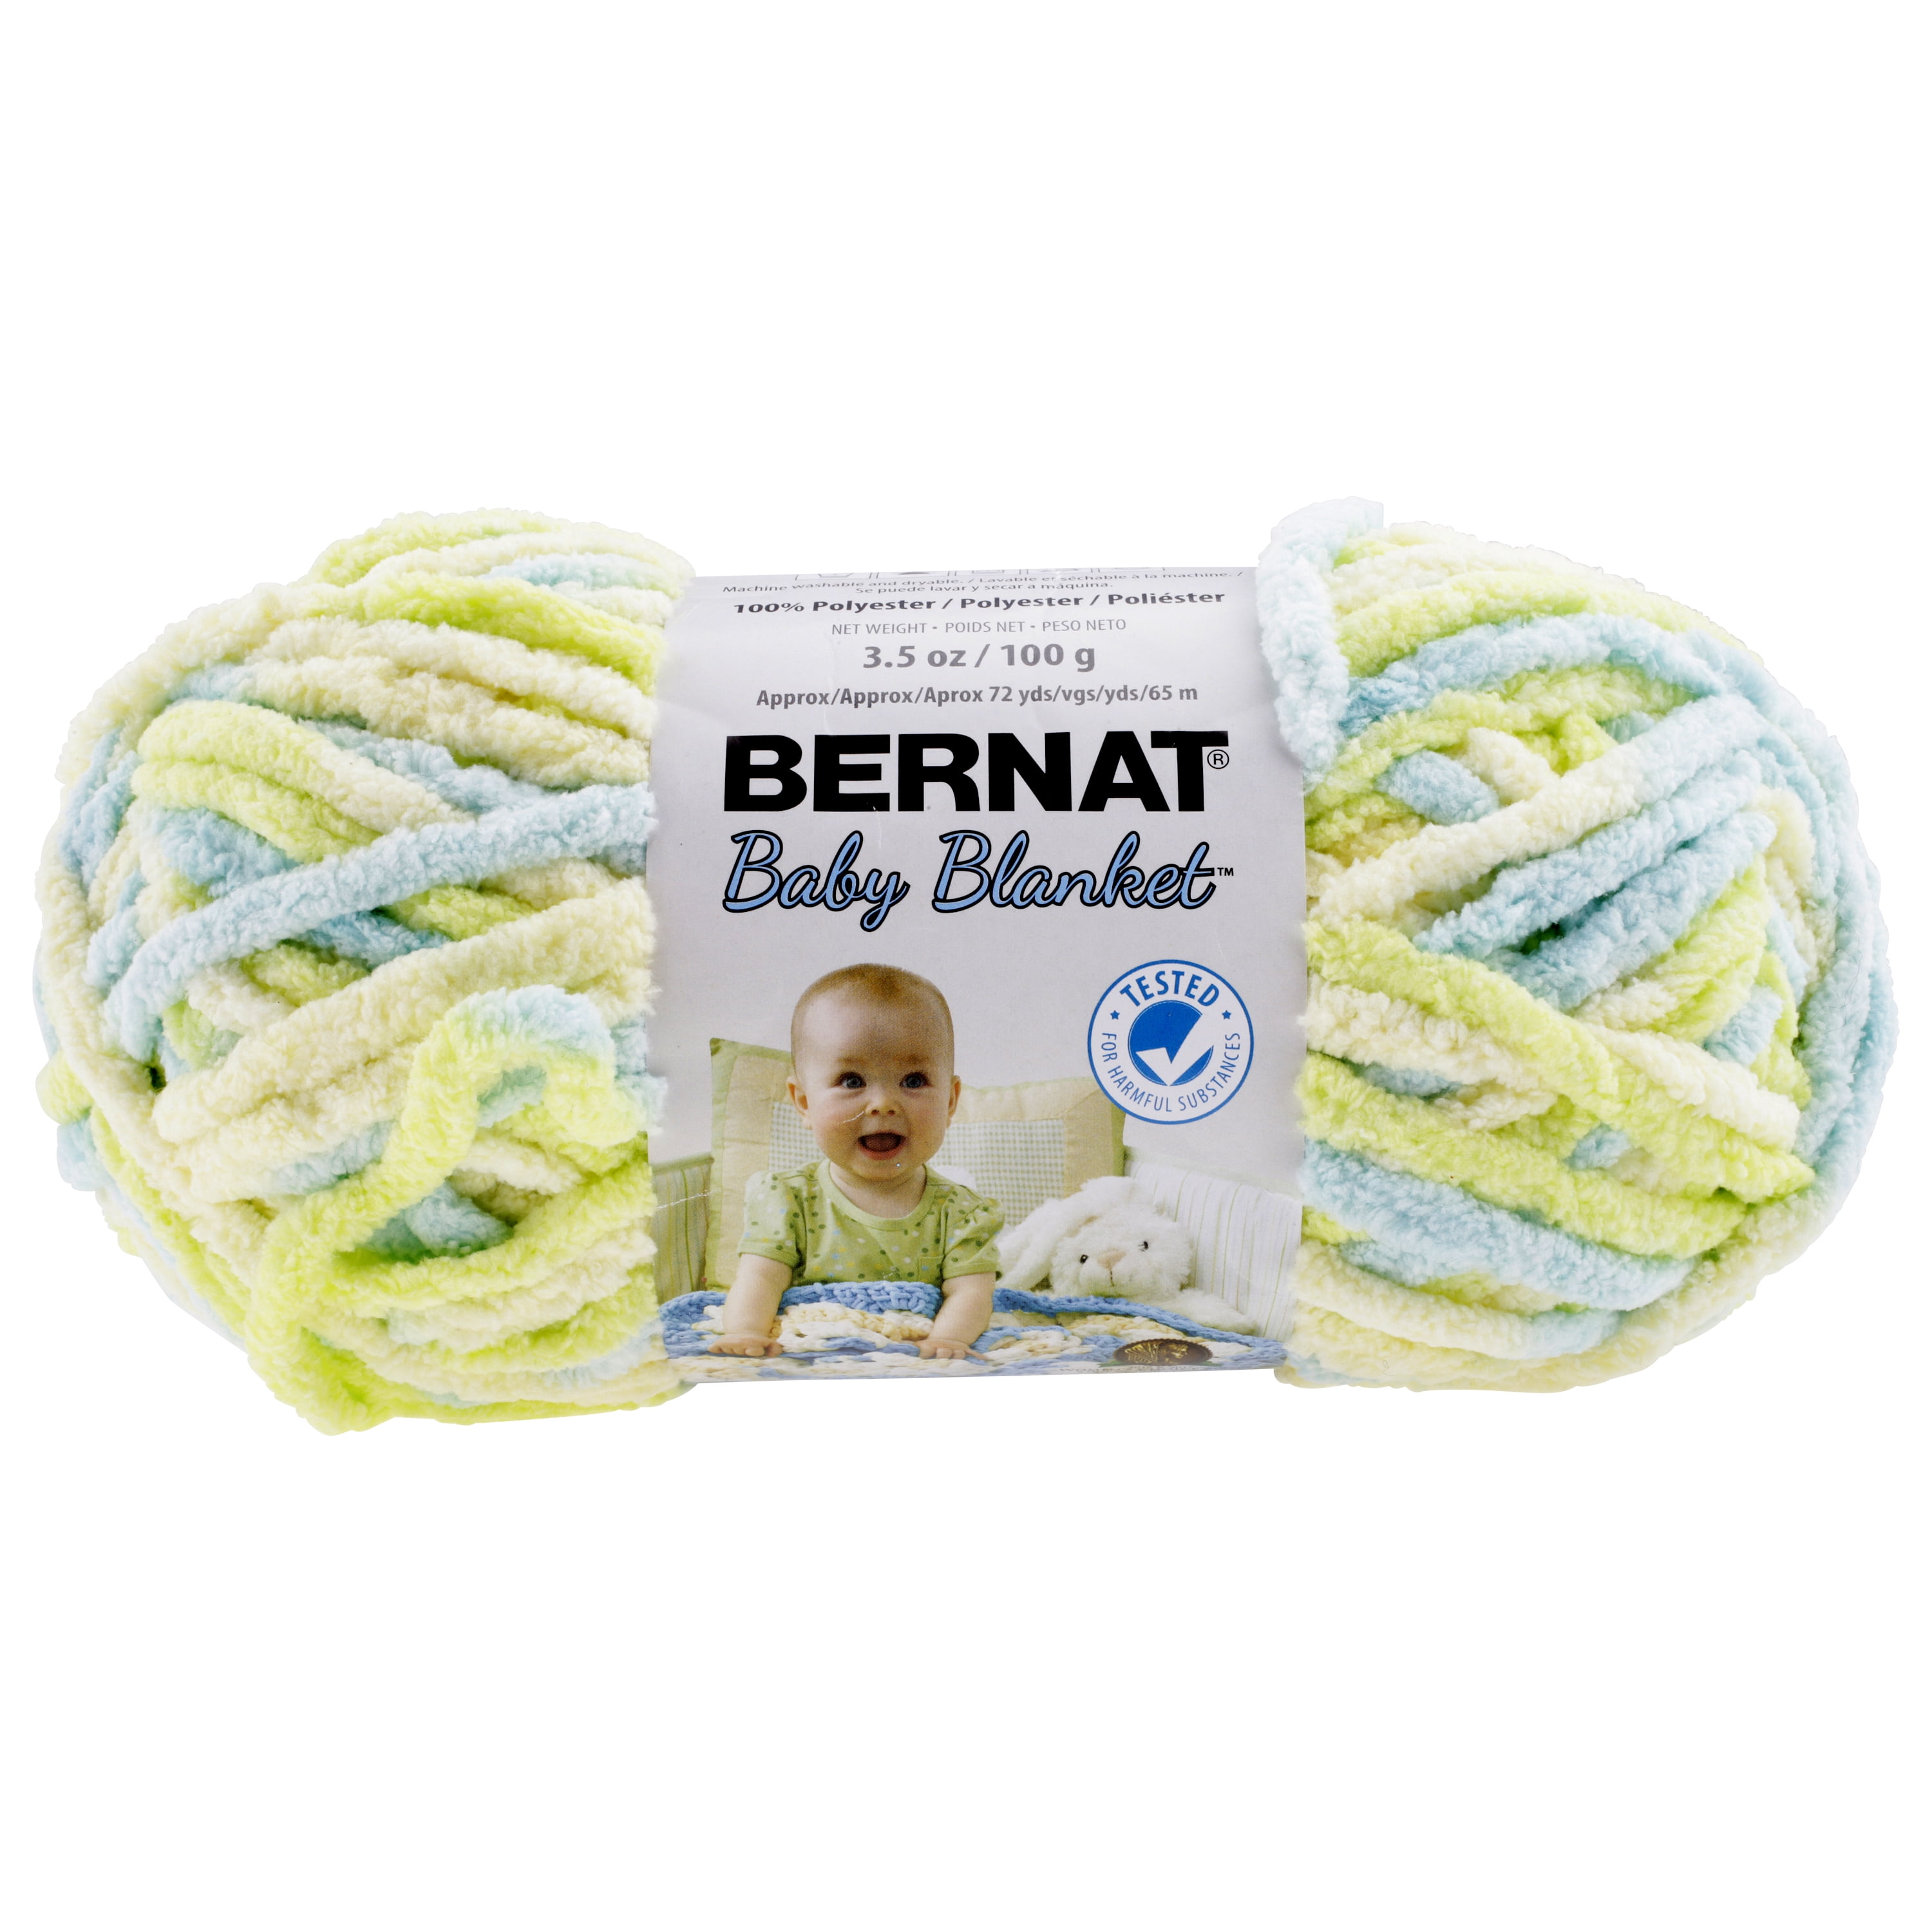 Bernat Polyester Baby Blanket Yarn 100g 35 Oz